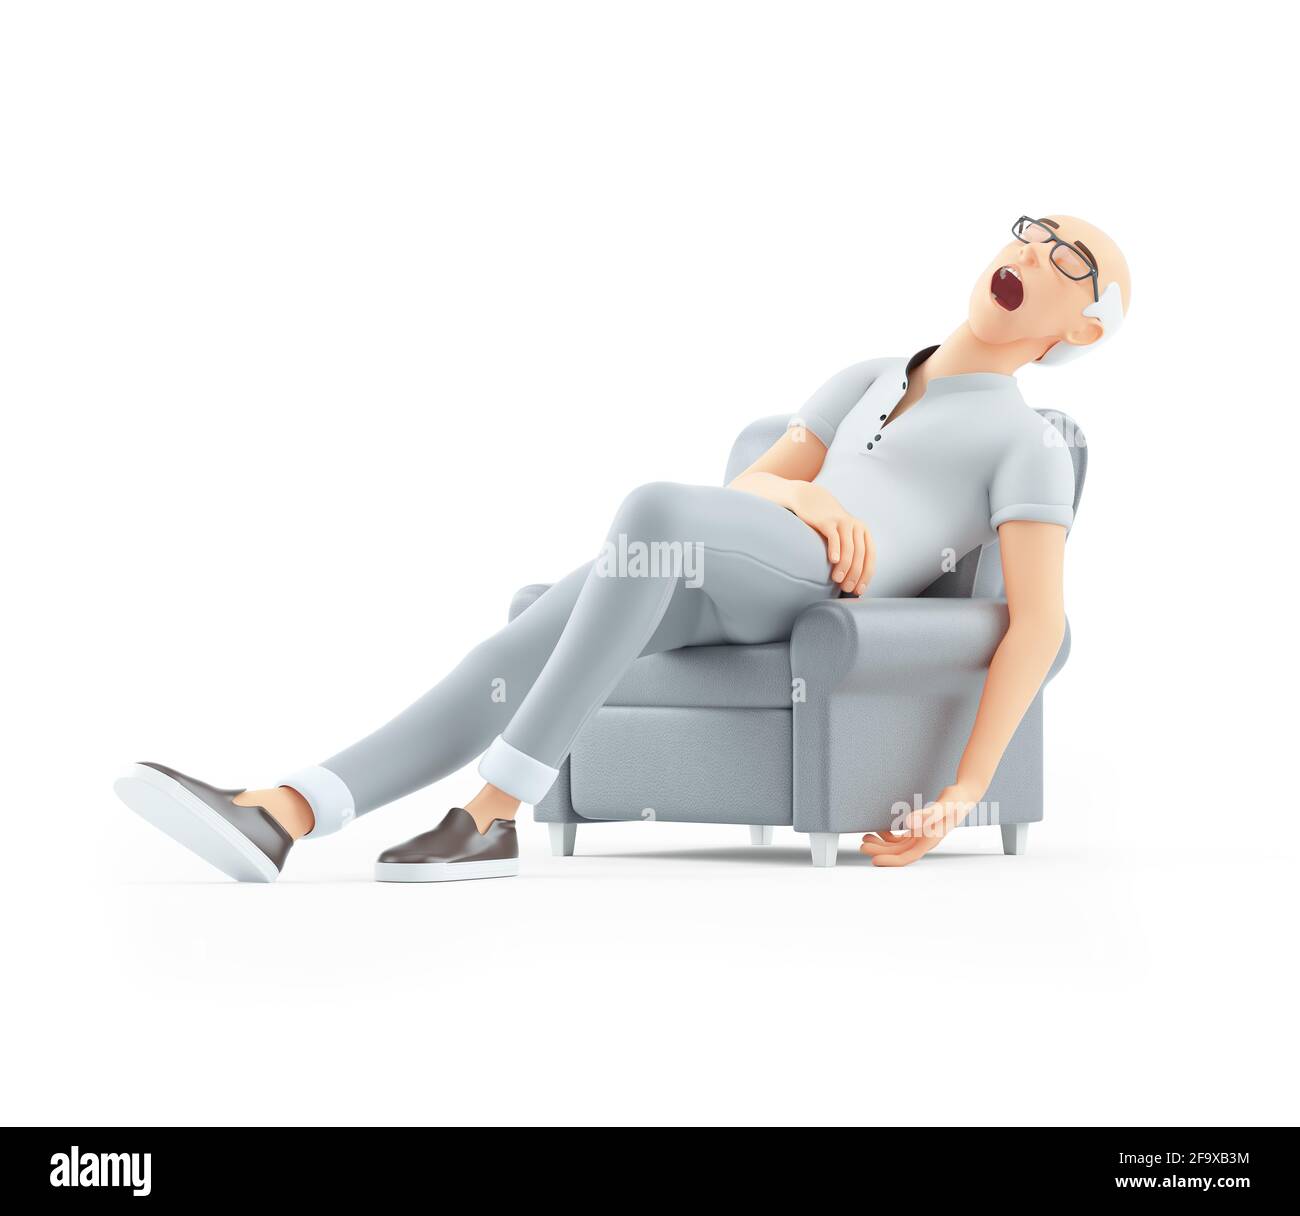 homme senior en 3d dormant dans un fauteuil, illustration isolée sur fond blanc Banque D'Images